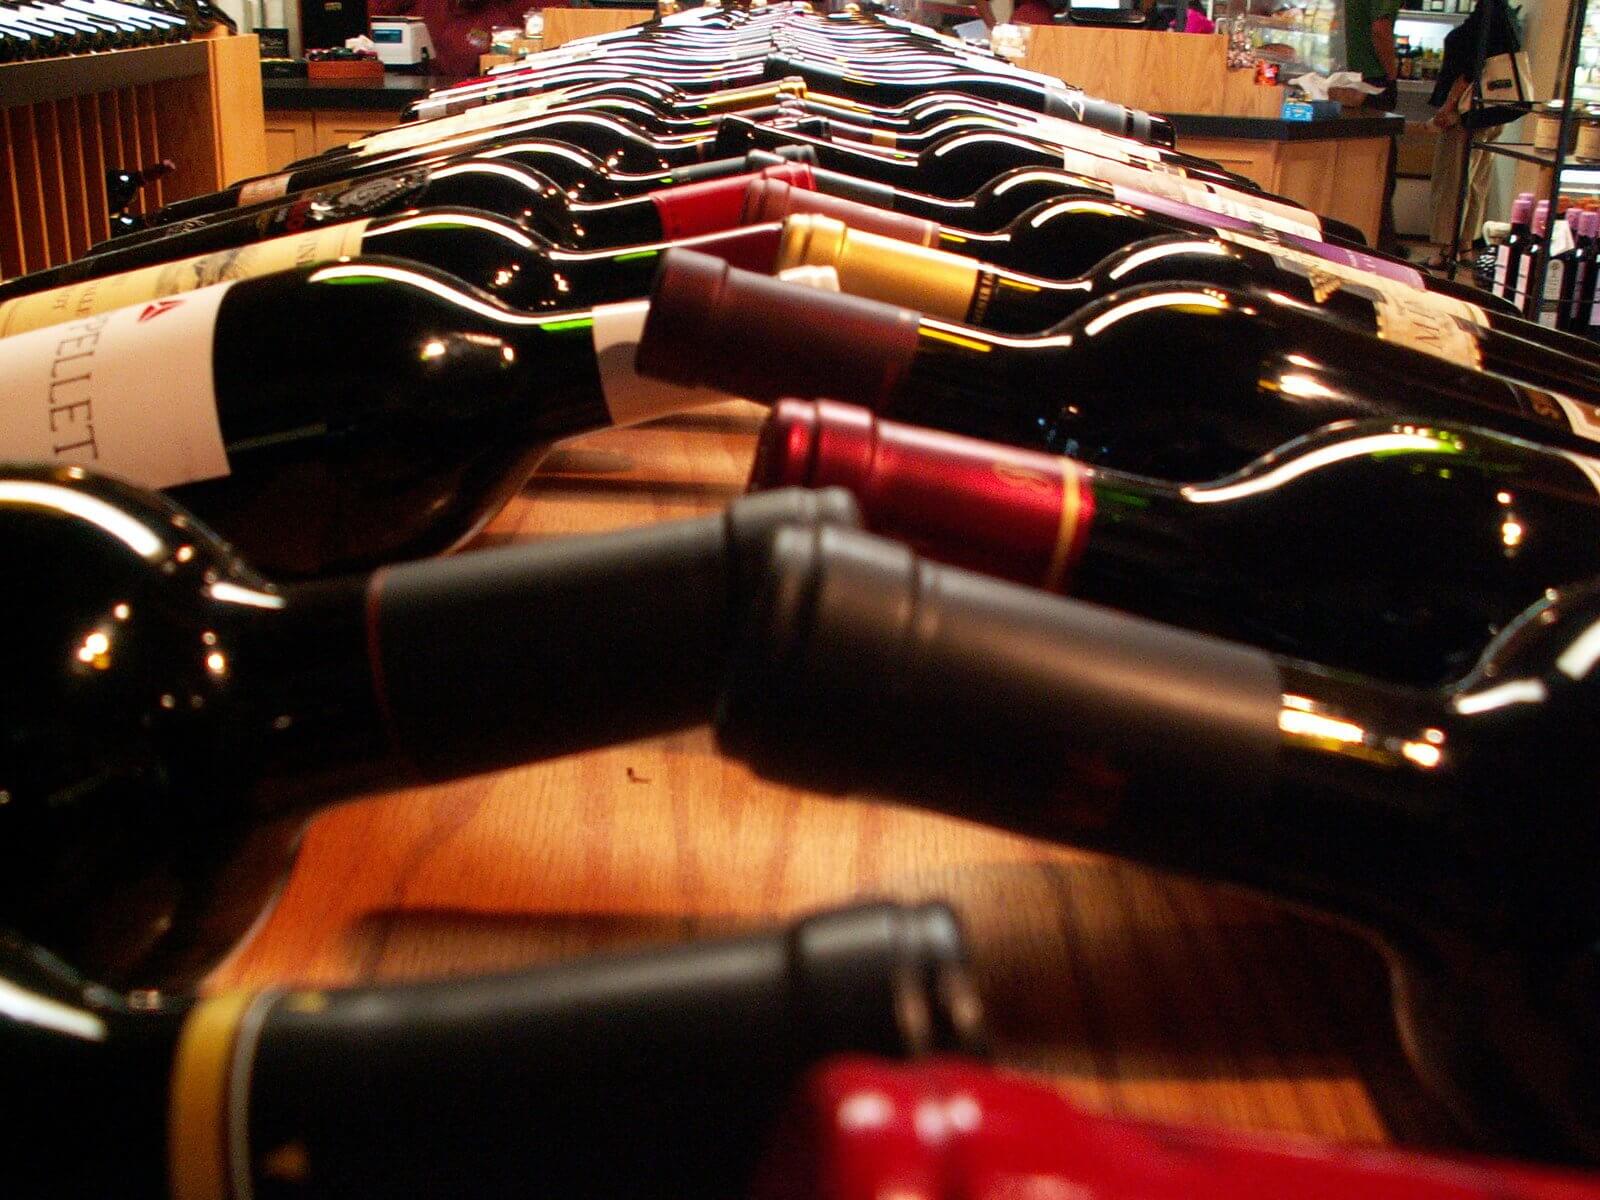 sf-wine-bottles-in-shop-02-1554916